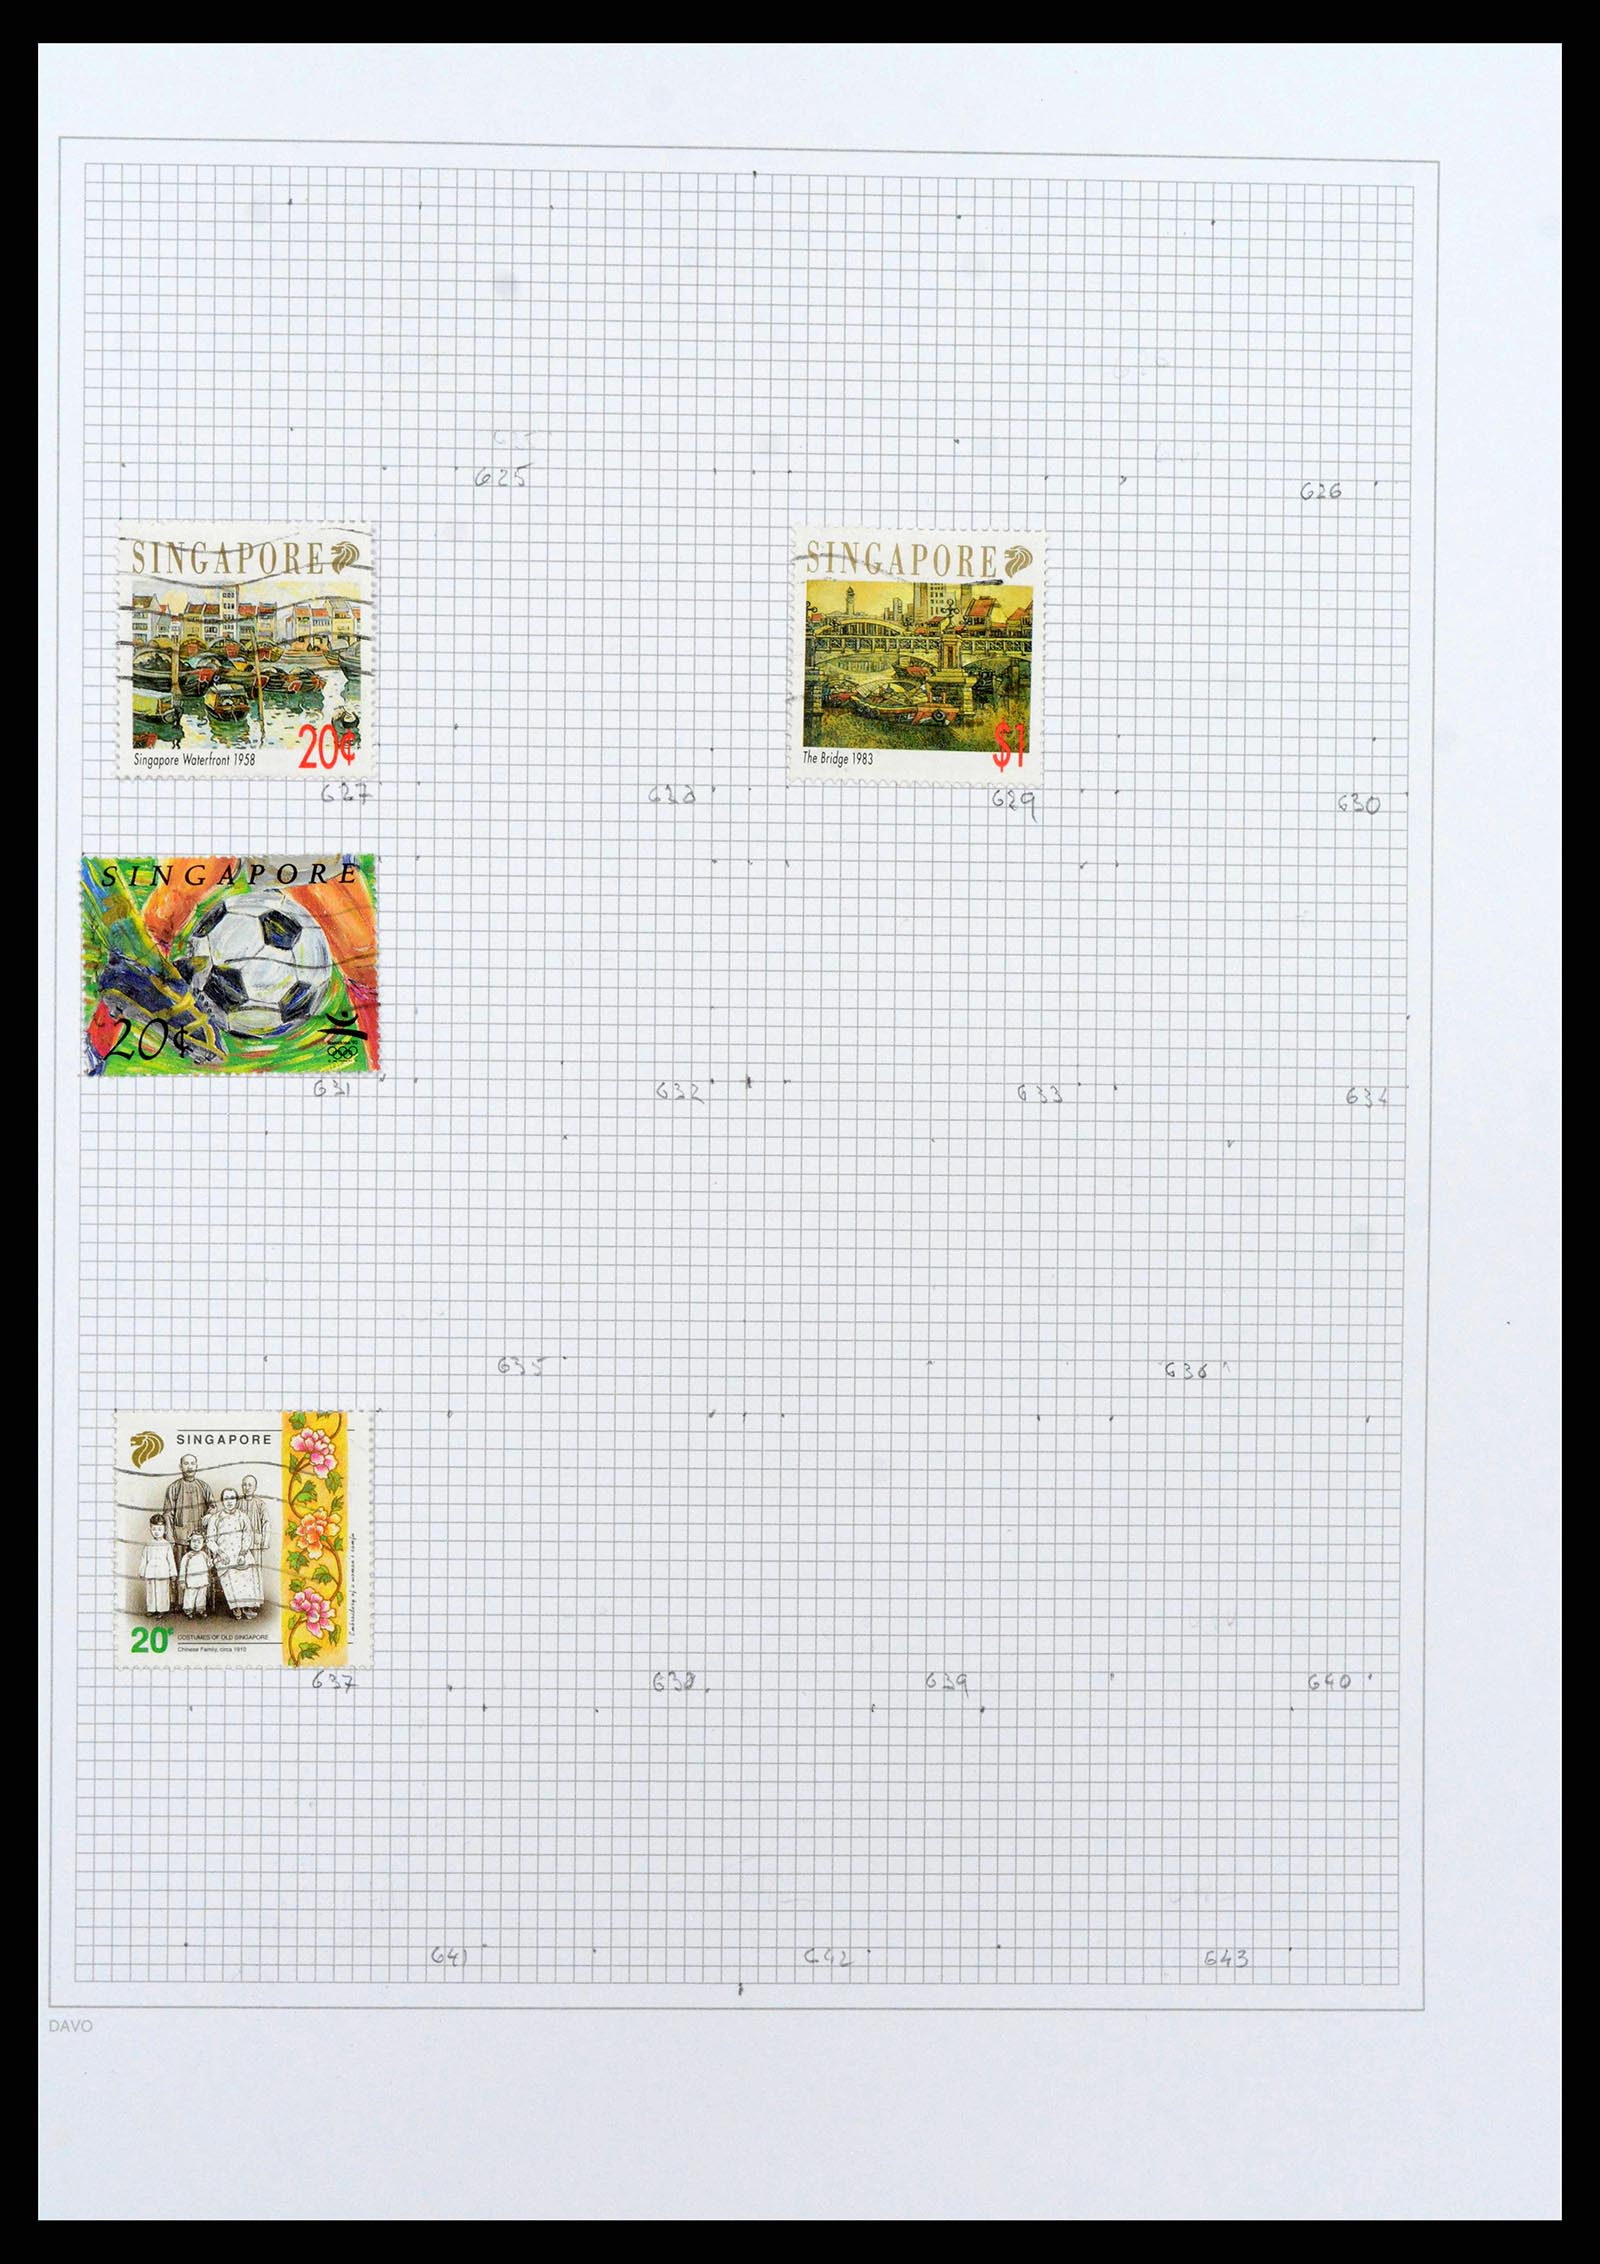 38158 0065 - Stamp collection 38158 Hong Kong 1862-1997.